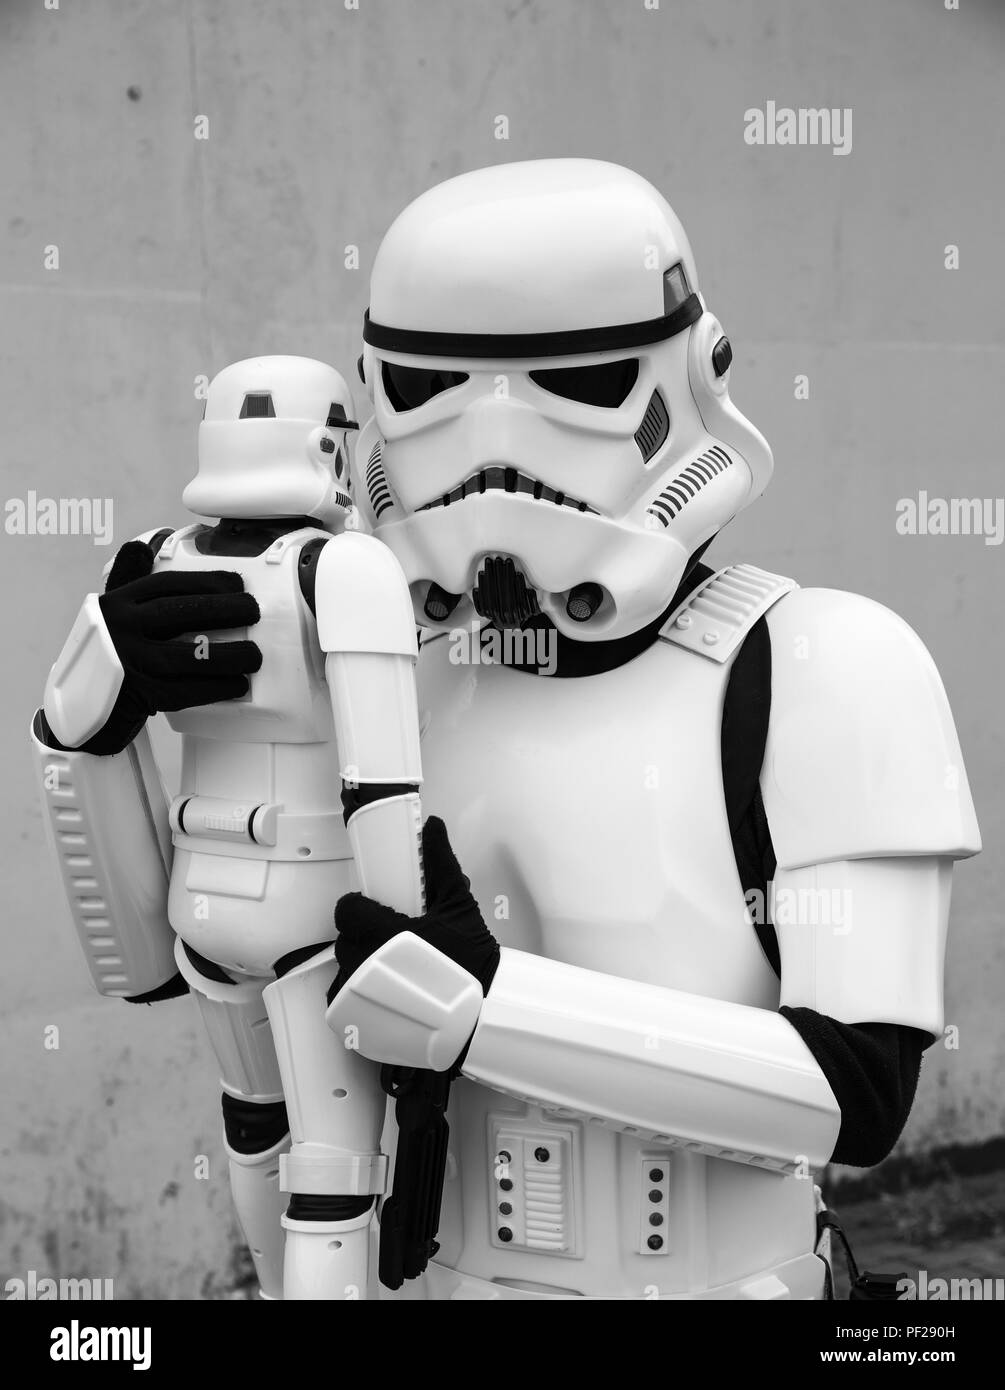 Un homme vêtu comme un cosplayeur Stormtrooper de la franchise Star Wars Stormtrooper holding a toy soigneusement dans un drôle de père et fils de droit. Banque D'Images